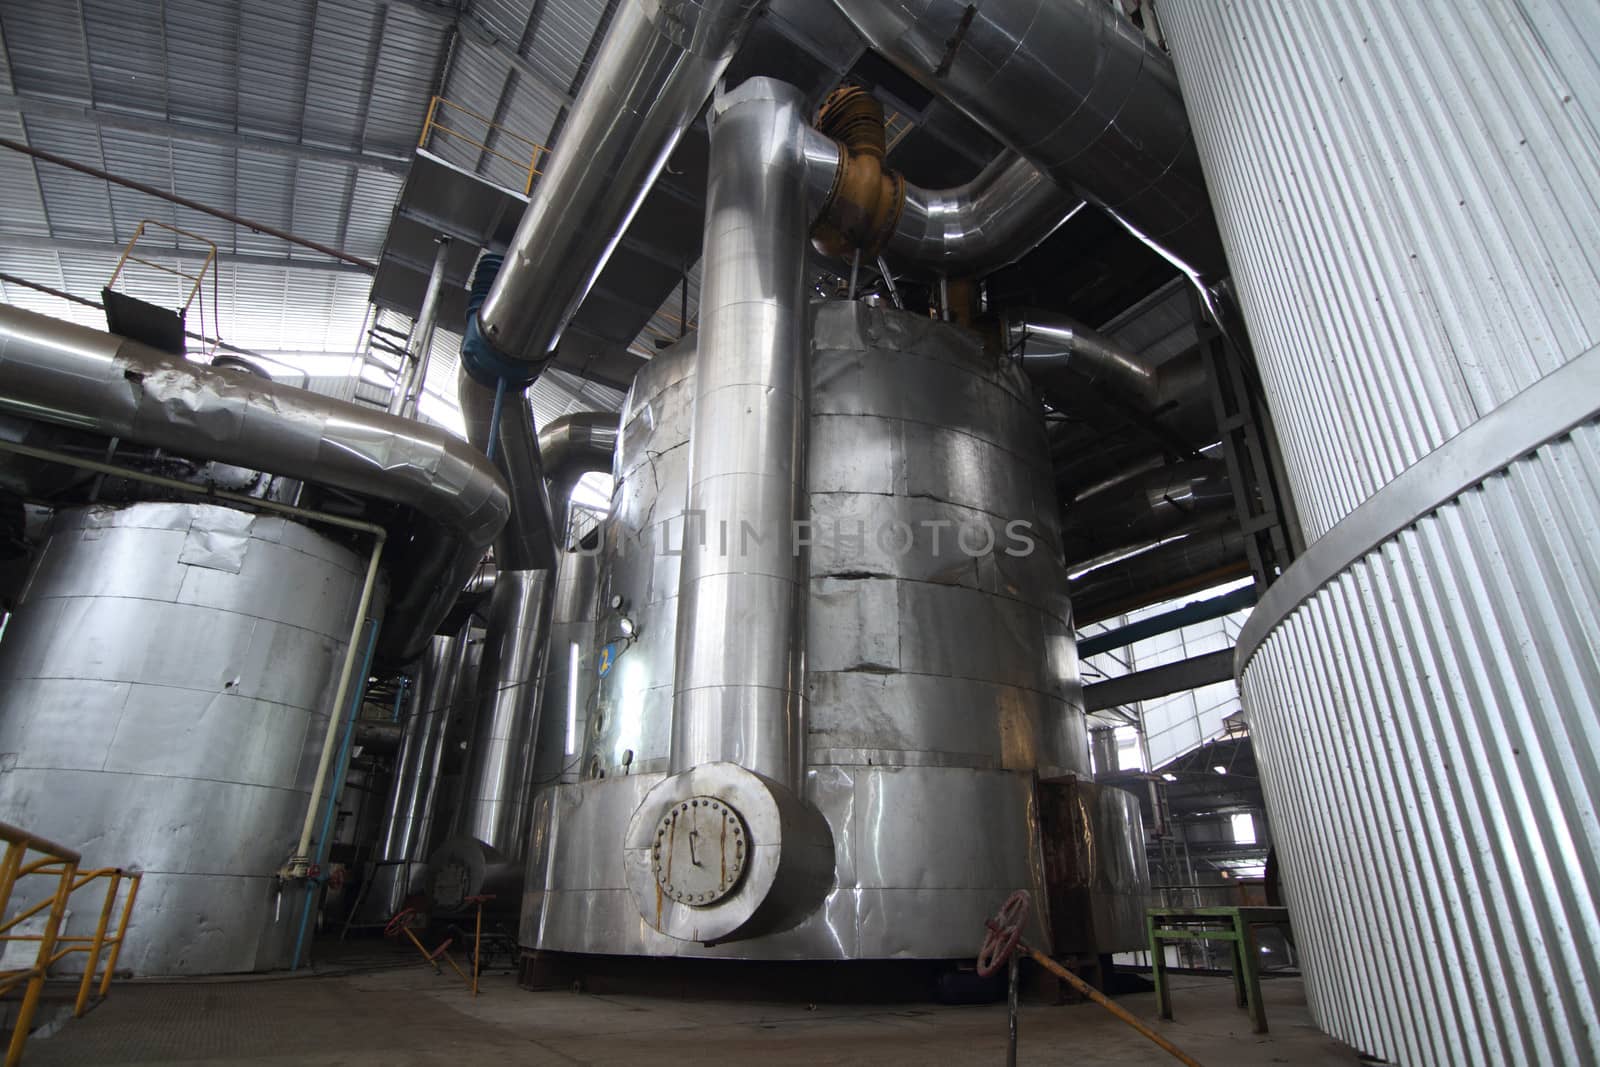 evaporator tanks in a sugar mill